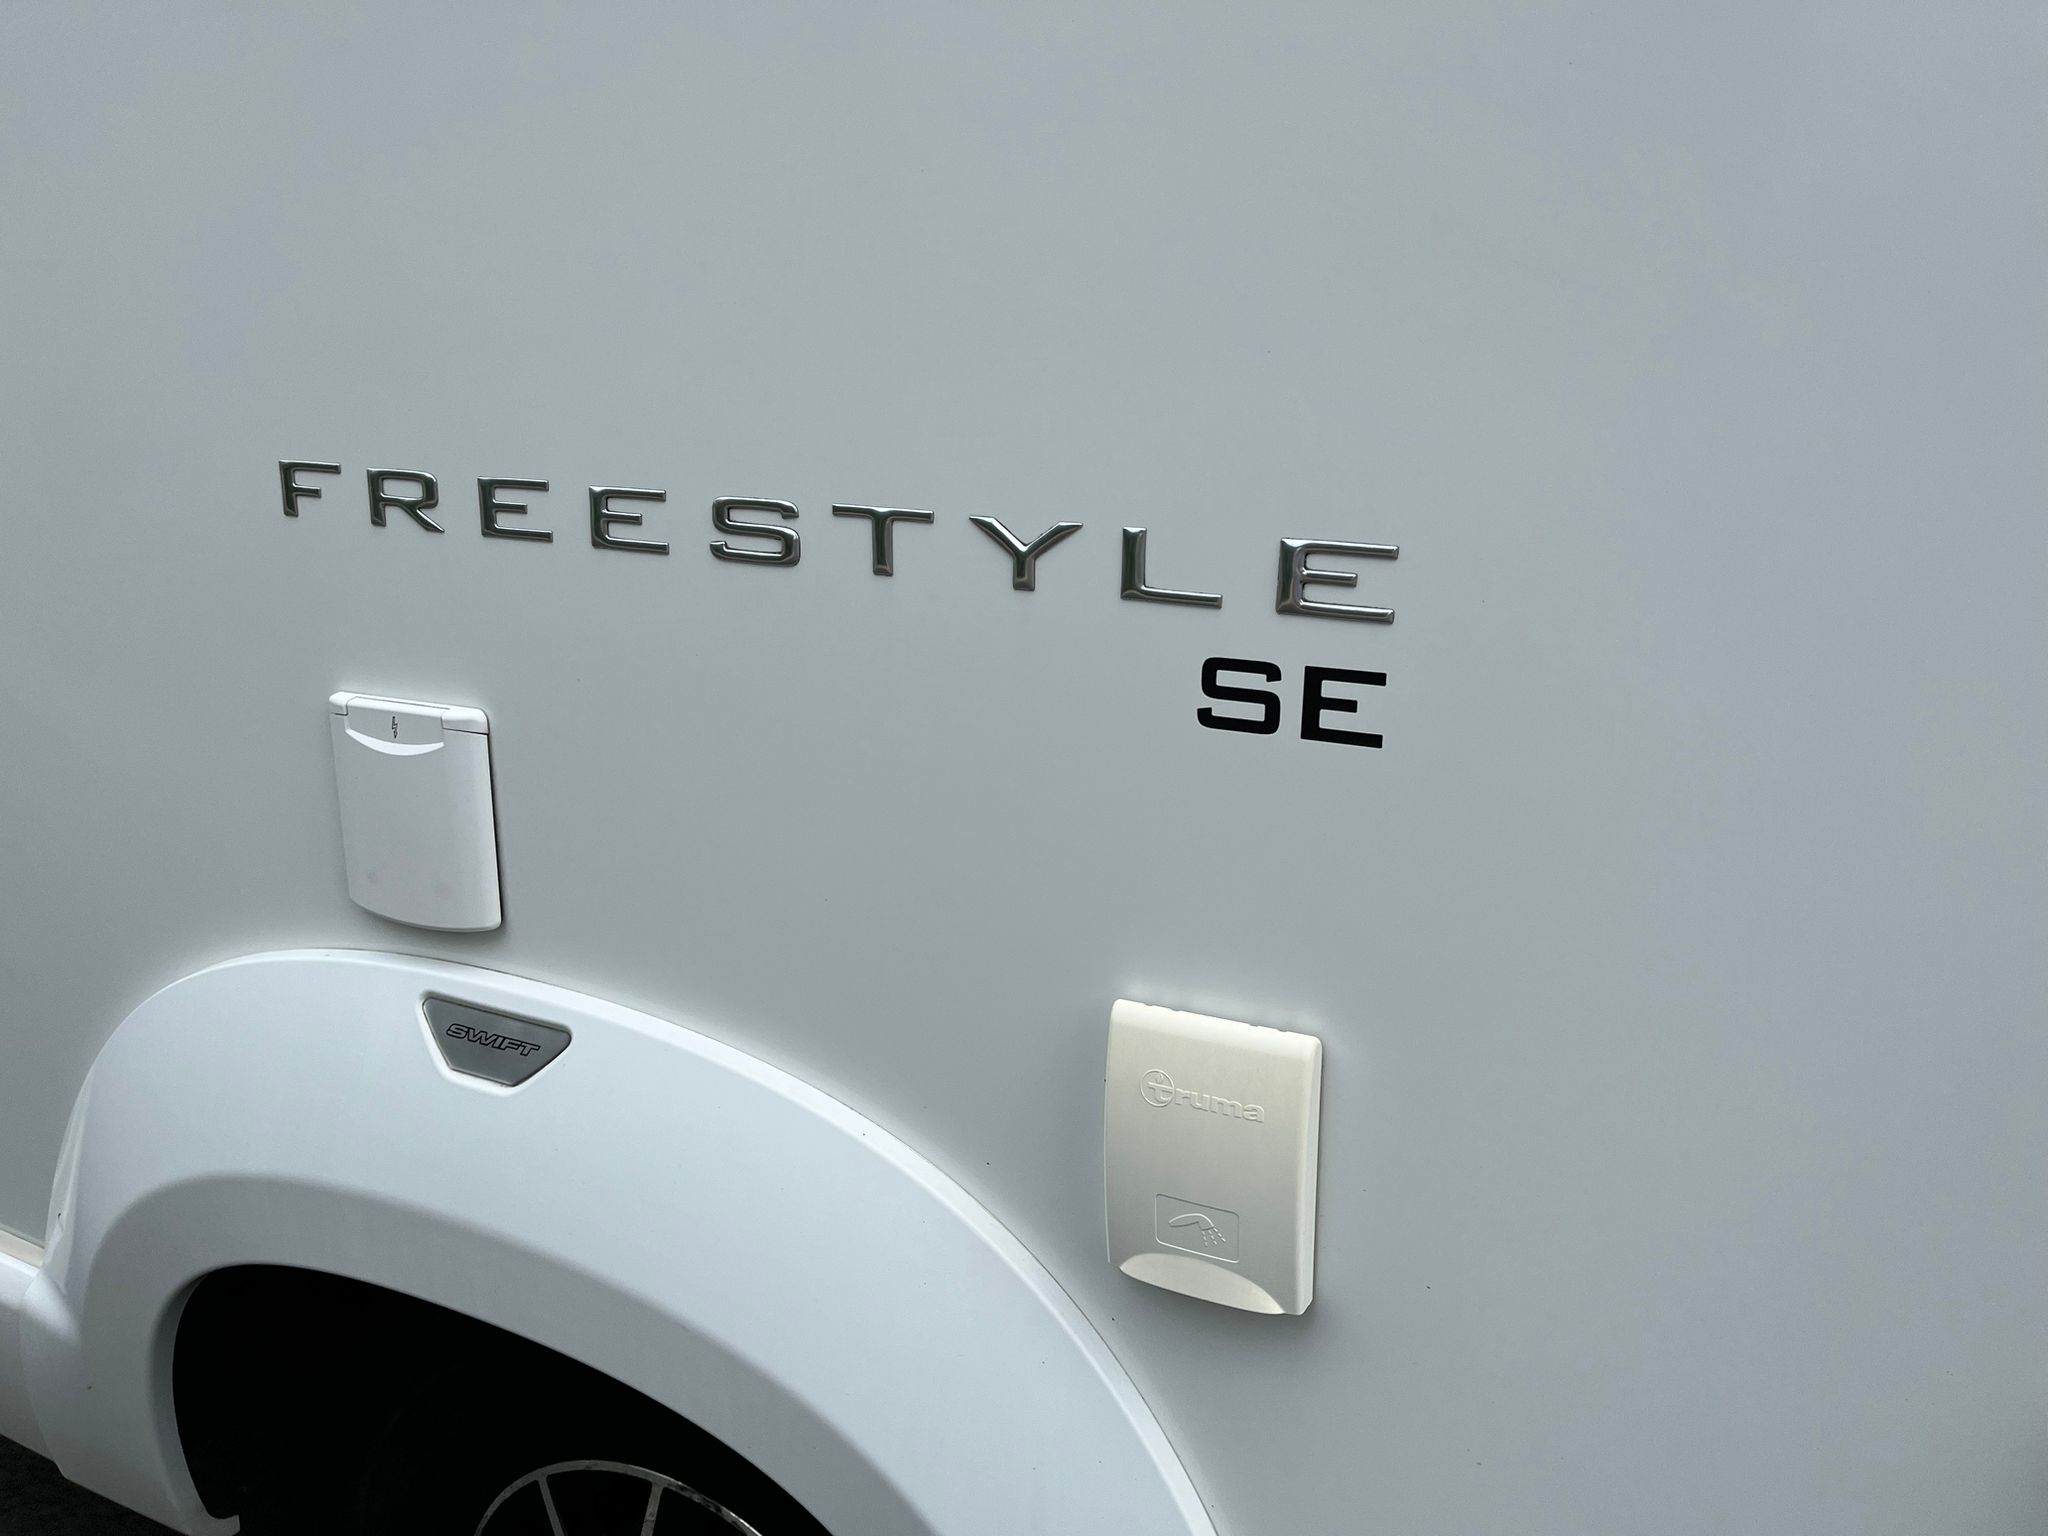 Swift Free-Style SE 614 - Manual